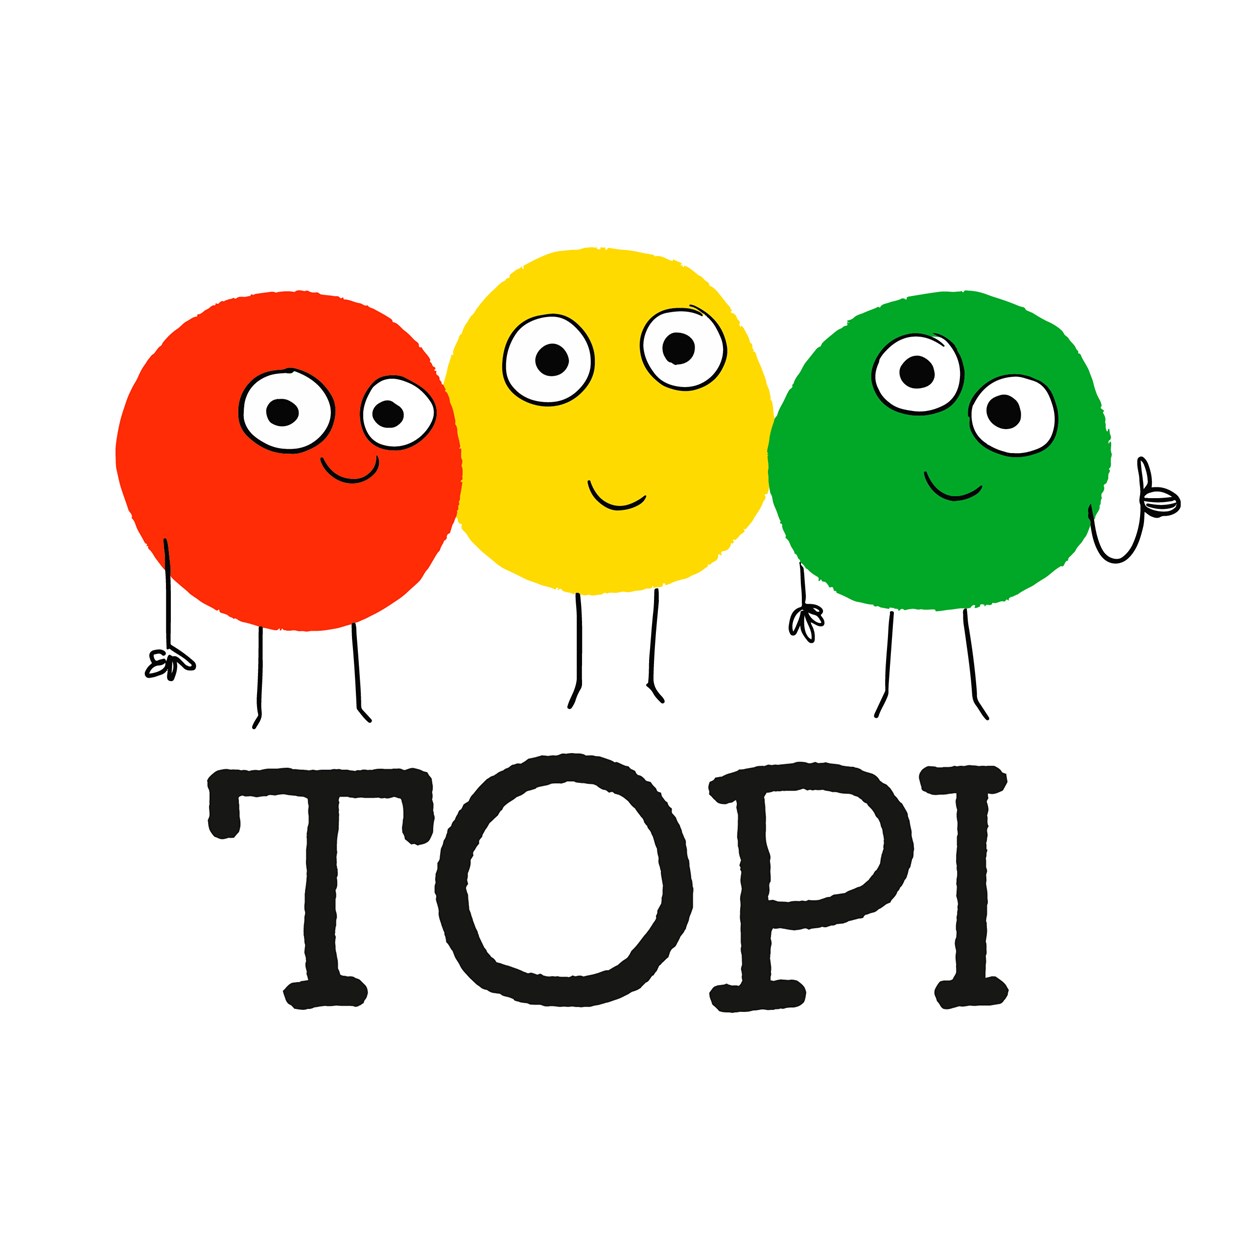 Tegning af glade figurer og teksten "TOPI"